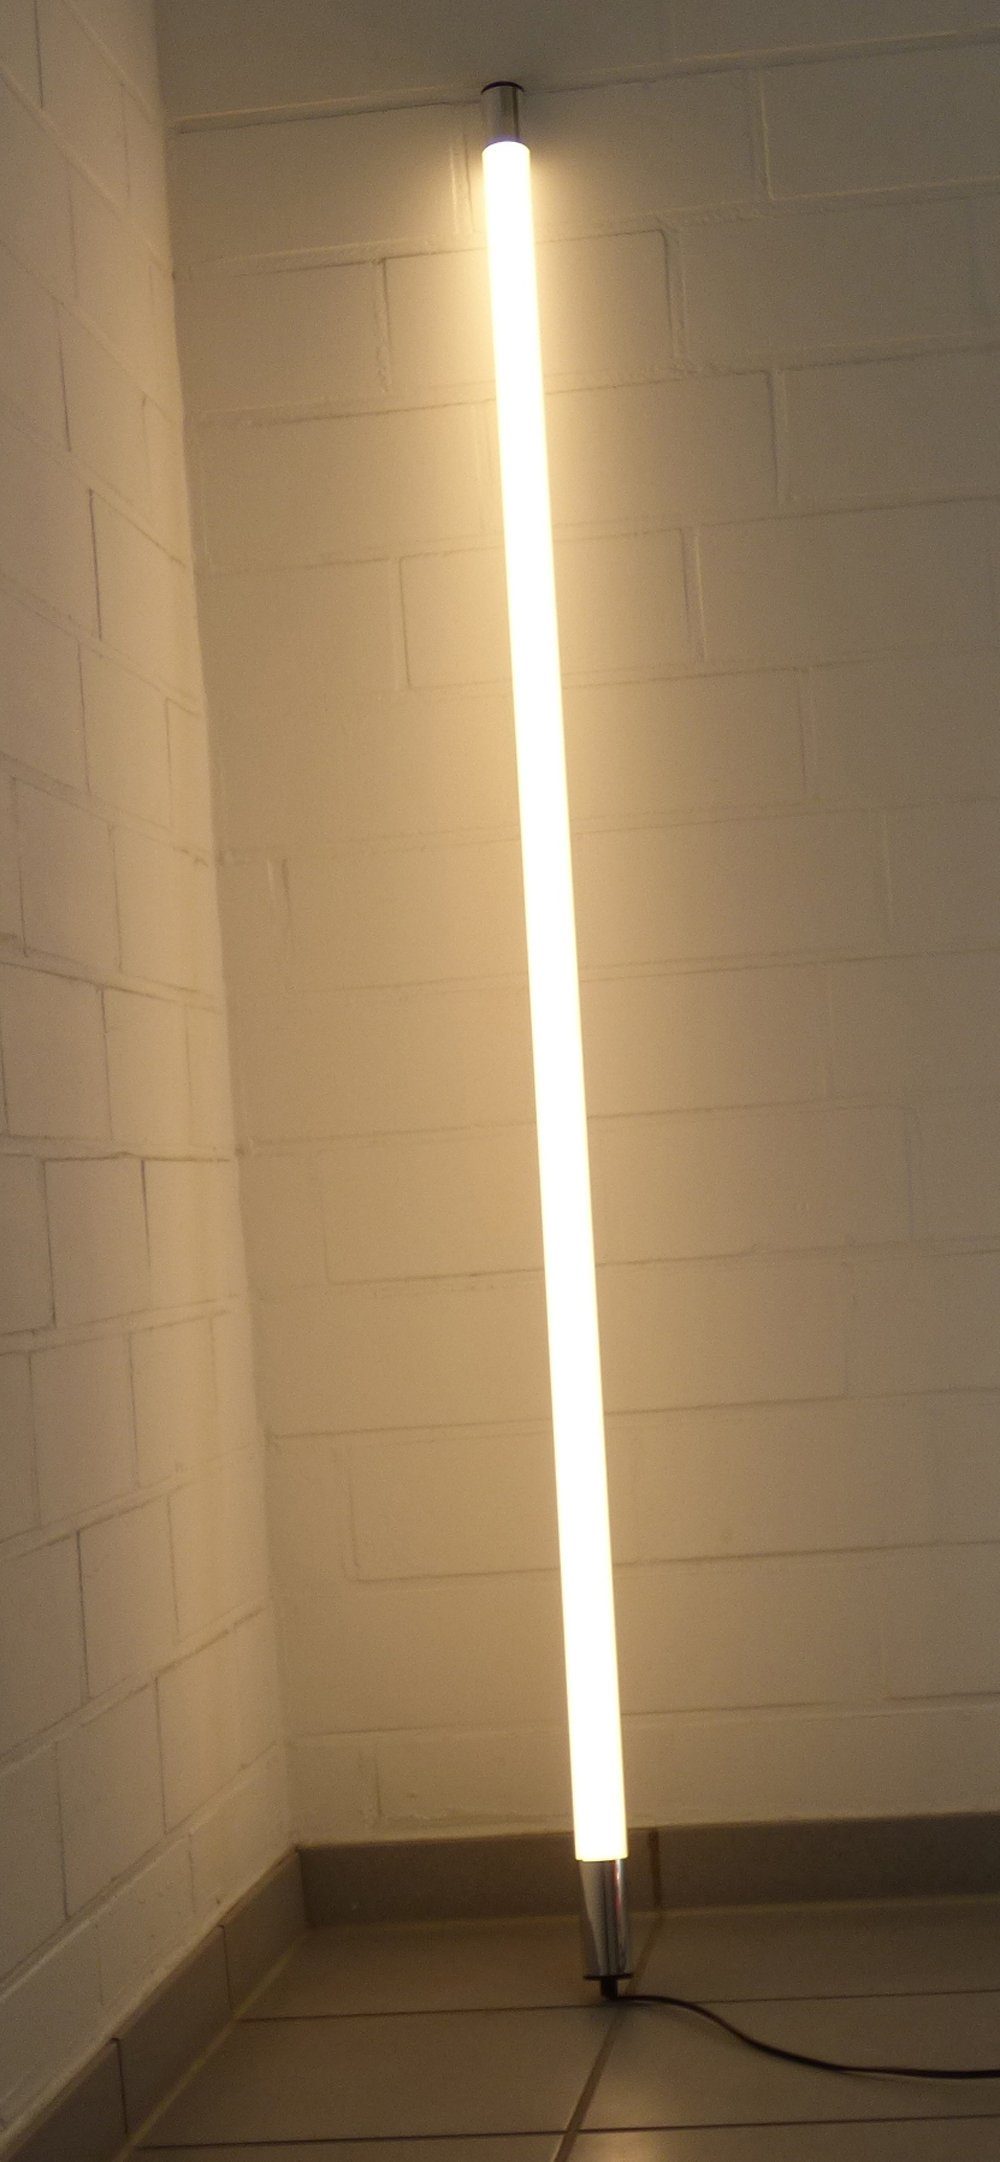 XENON LED Wandleuchte 6873 LED Leuchtstab Satiniert 1,53m 2400 Lm IP44 Außen Neutral Weiß, LED, Xenon / Neutral Weiß